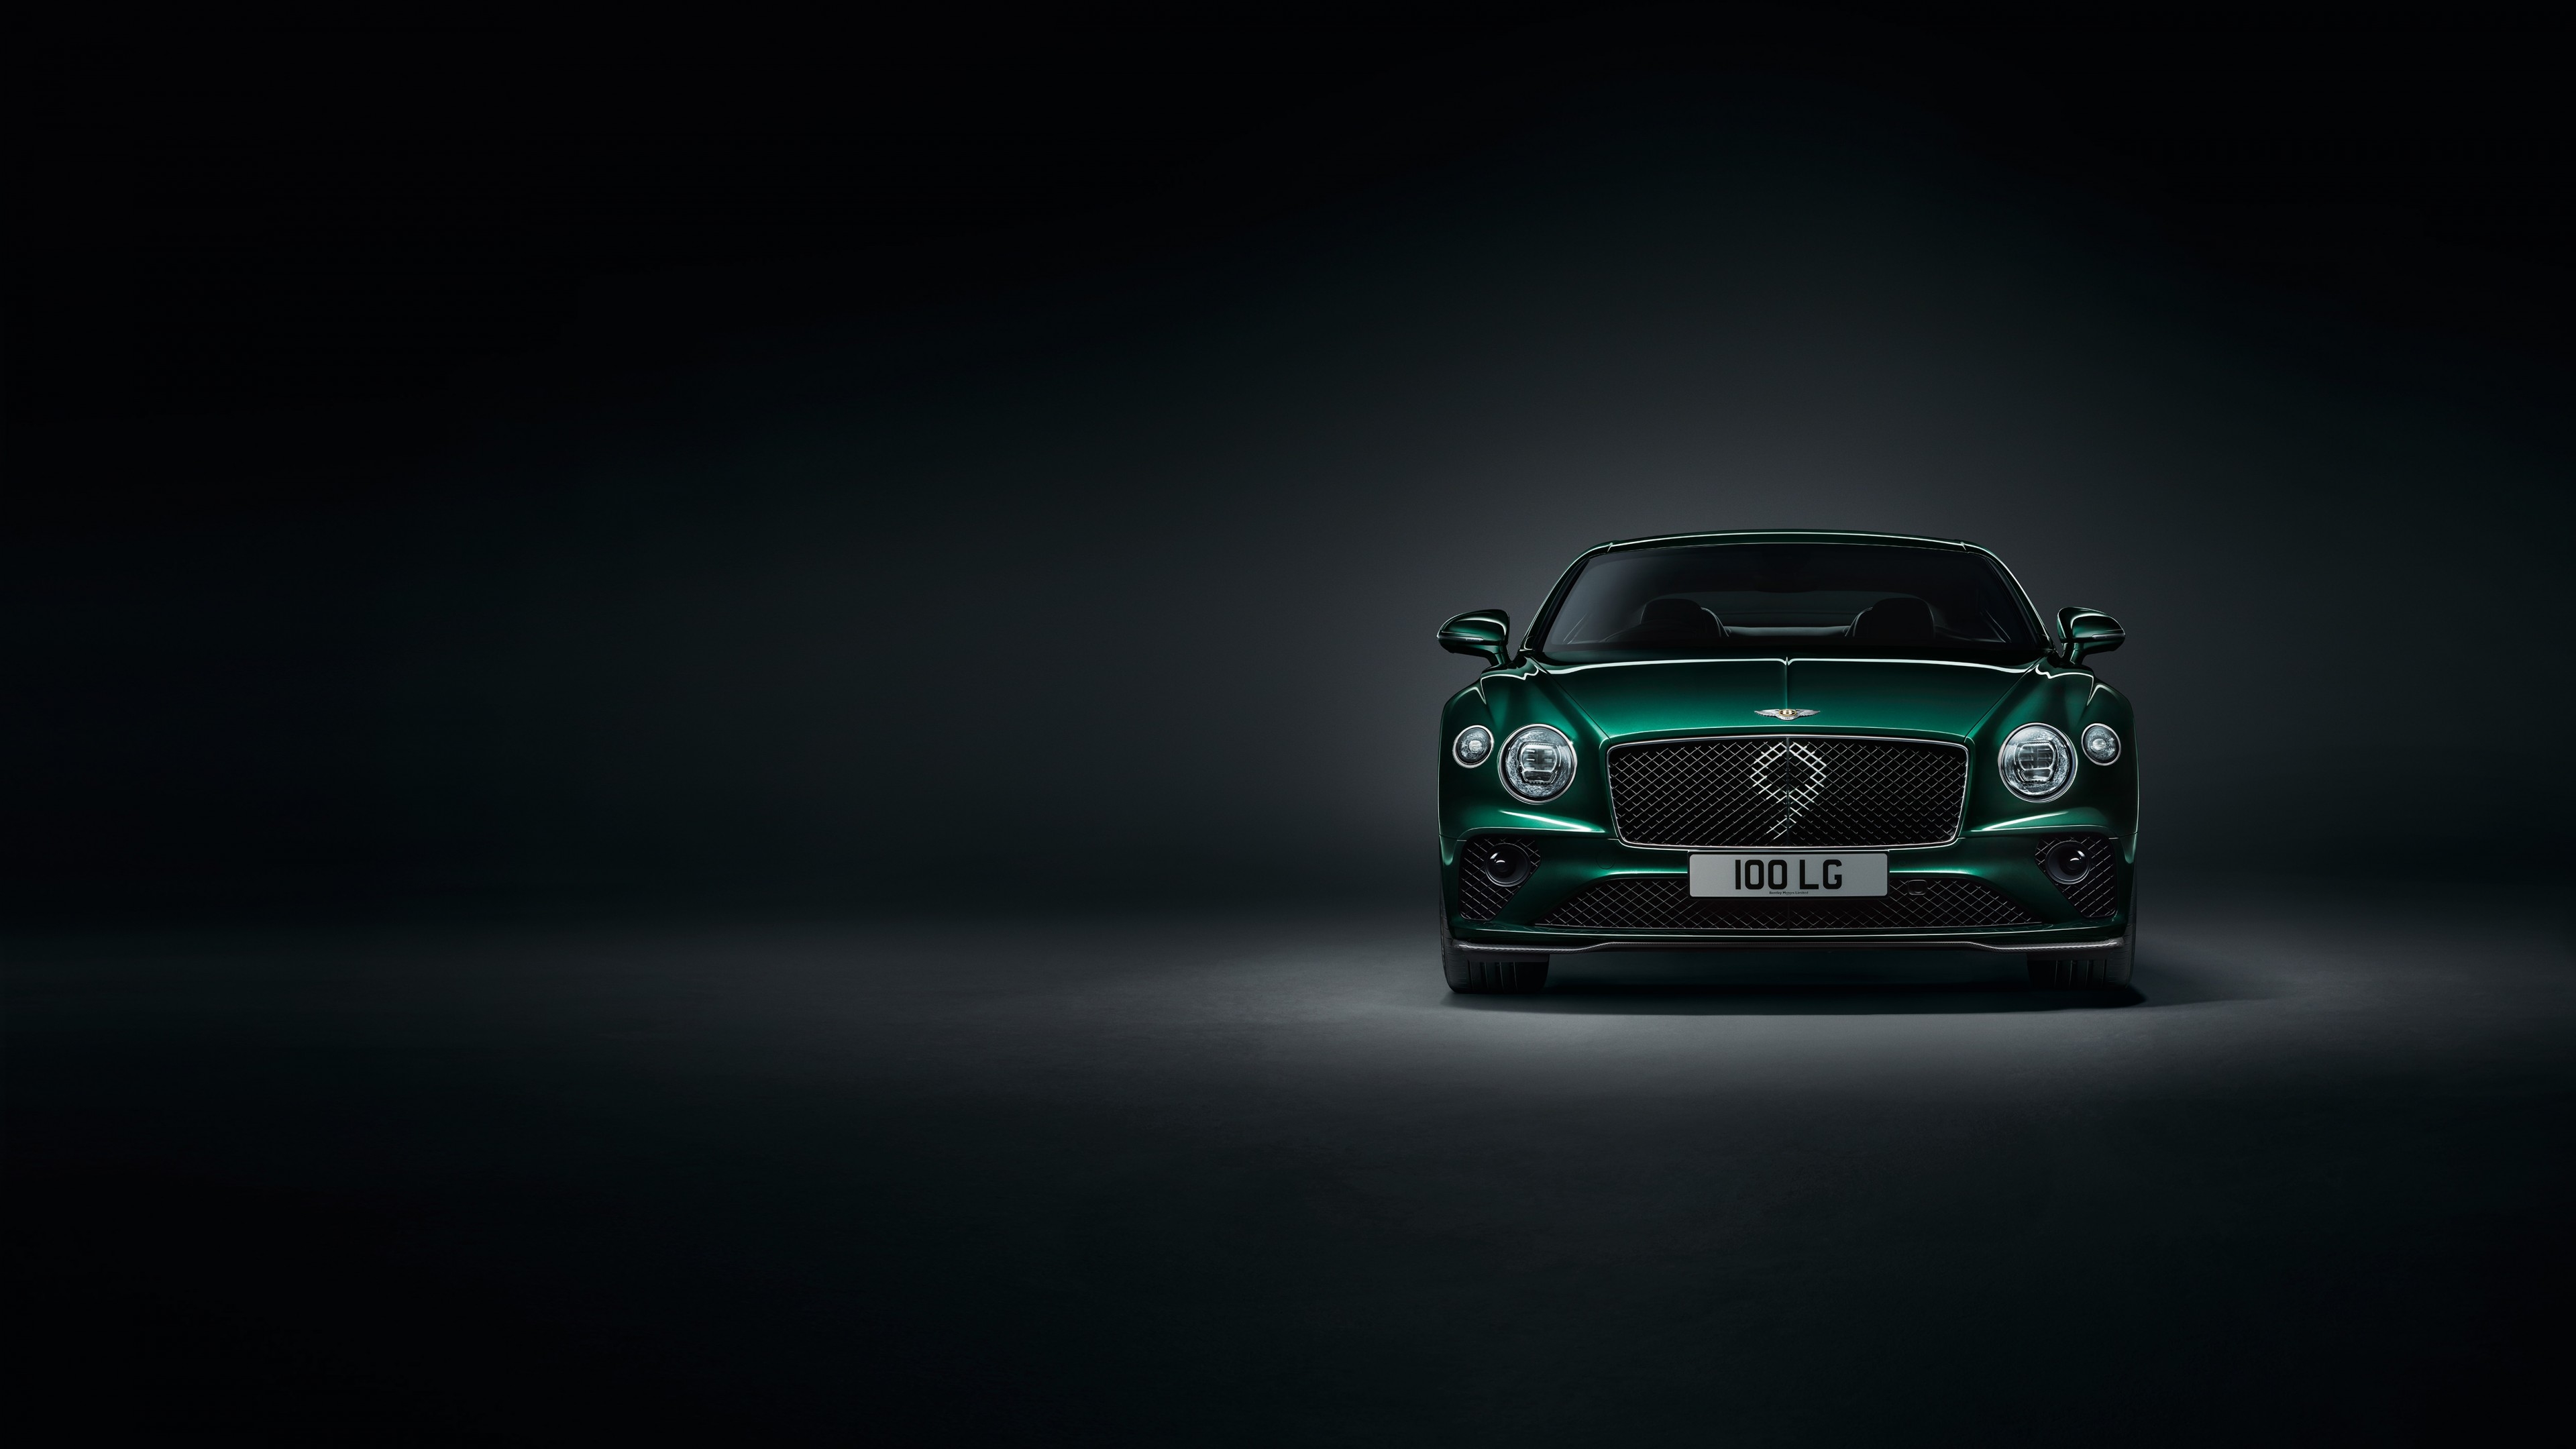 2560x14402020616 Bentley Continental GT